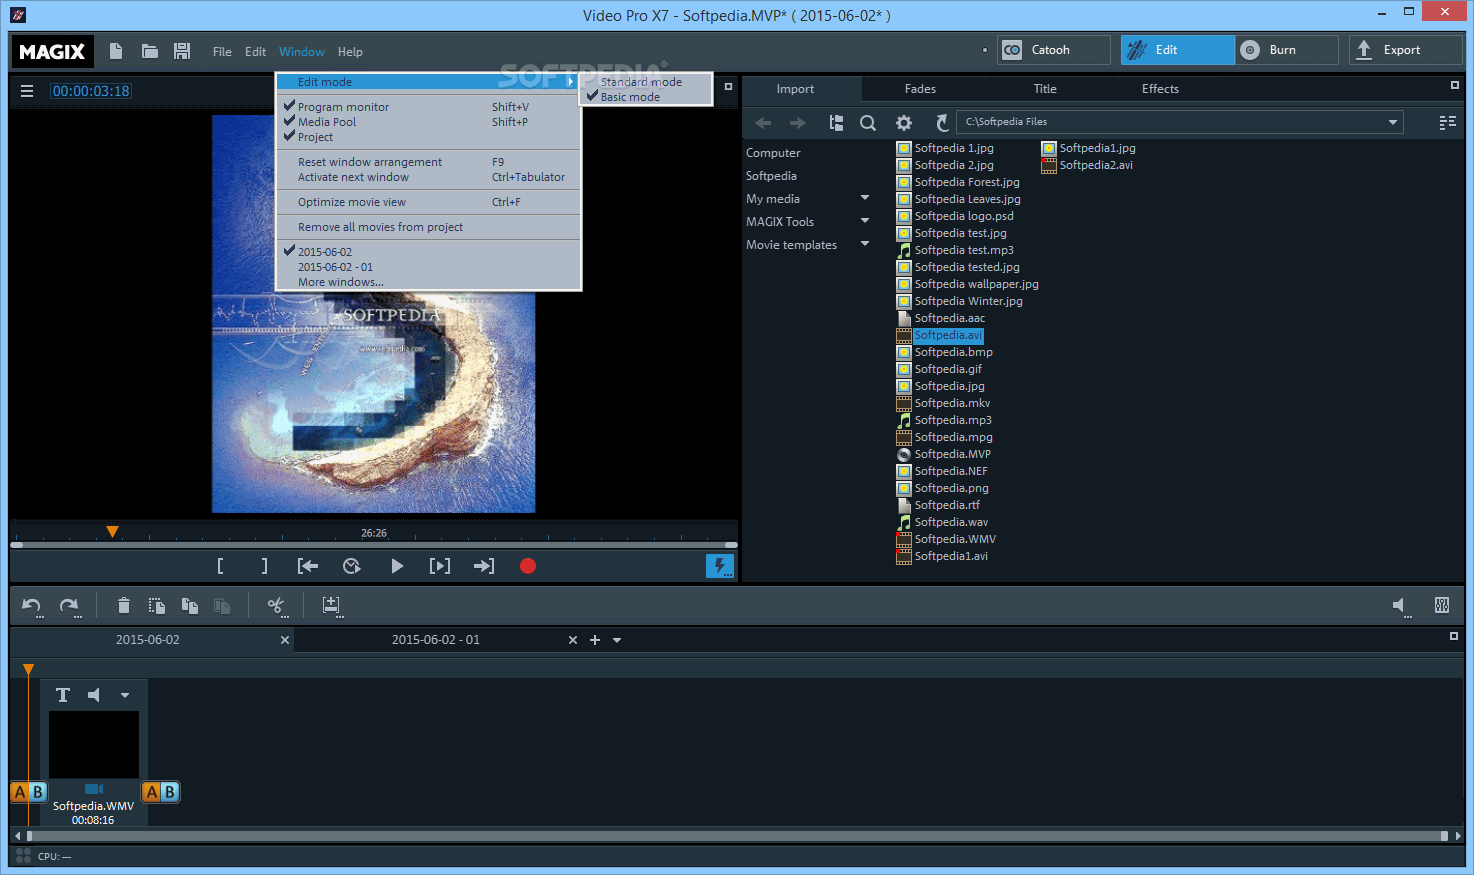 MAGIX Video Pro X15 v21.0.1.198 instal the new version for mac